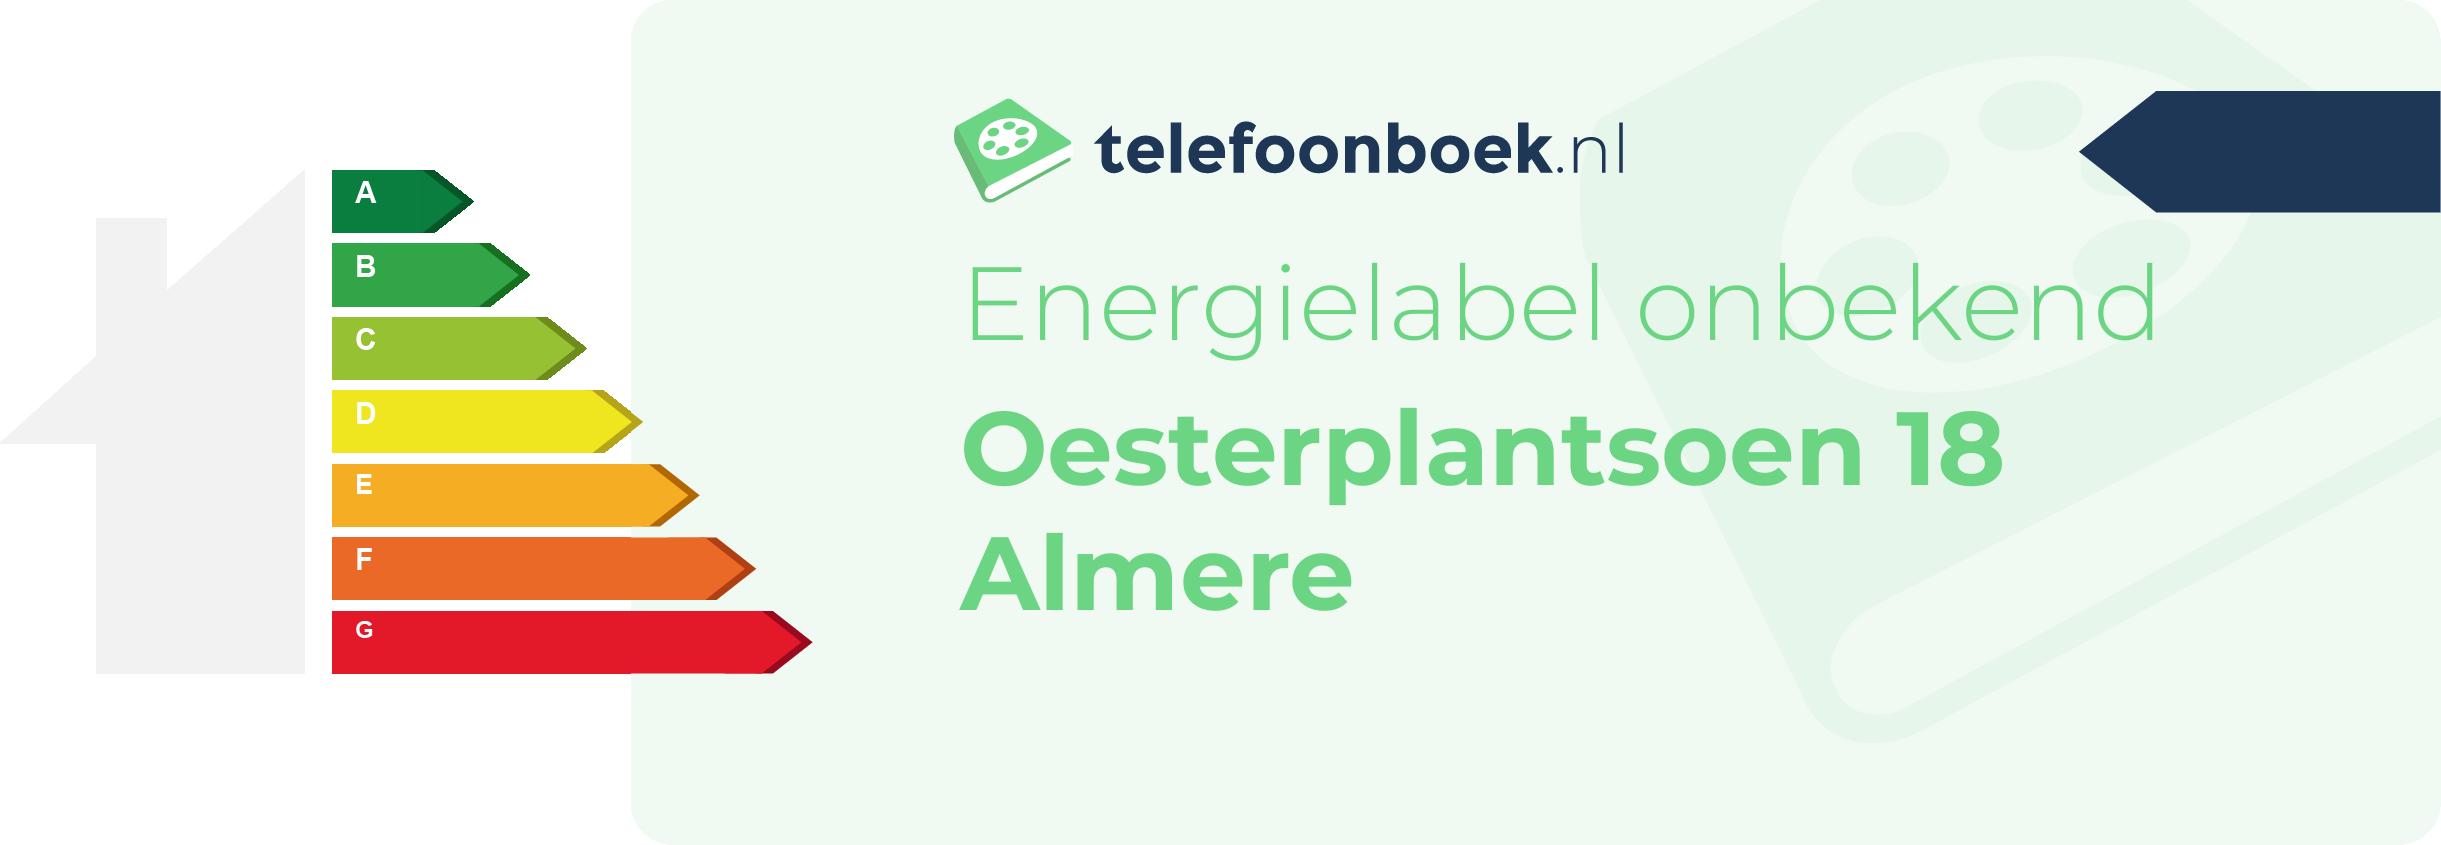 Energielabel Oesterplantsoen 18 Almere